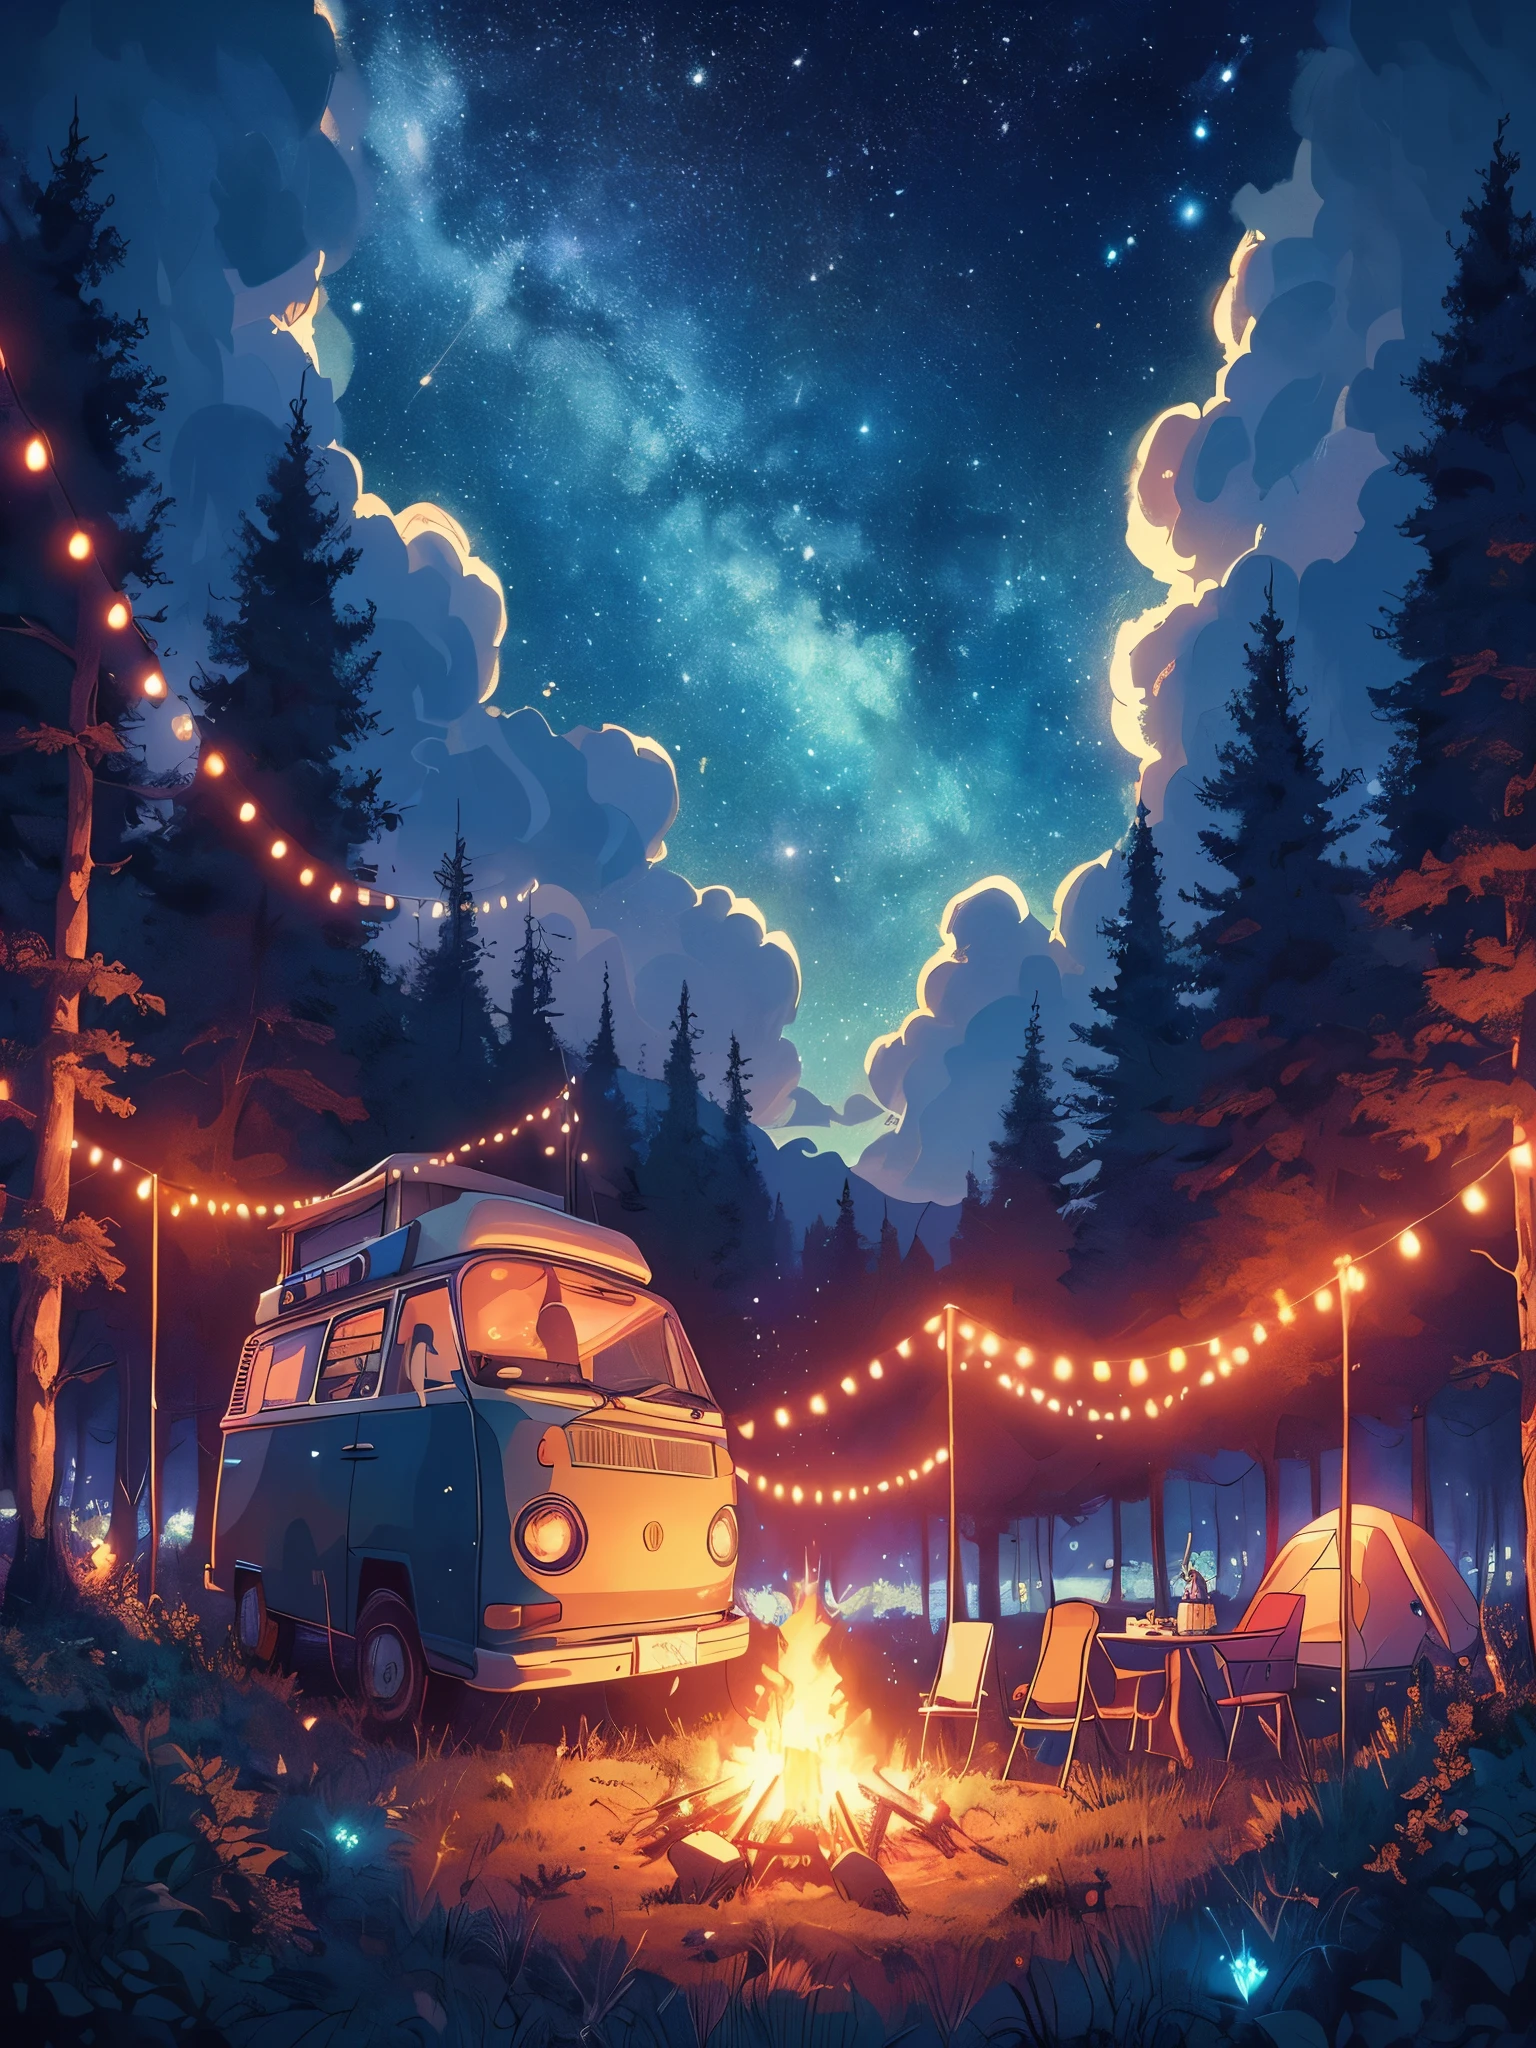 Zeichnen Sie eine Lofi-Szene im Anime-Poster-Stil eines Wohnmobils im Wald, Lichterketten Dekor, Lagerfeuer, barbeque, sternenklarer Himmel, Wildnis, dichter Wald, Nacht, schöne Farbpalette, lebendige, gesättigte Farben, Meisterwerk, filmischer bewölkter Himmel, kein Mensch